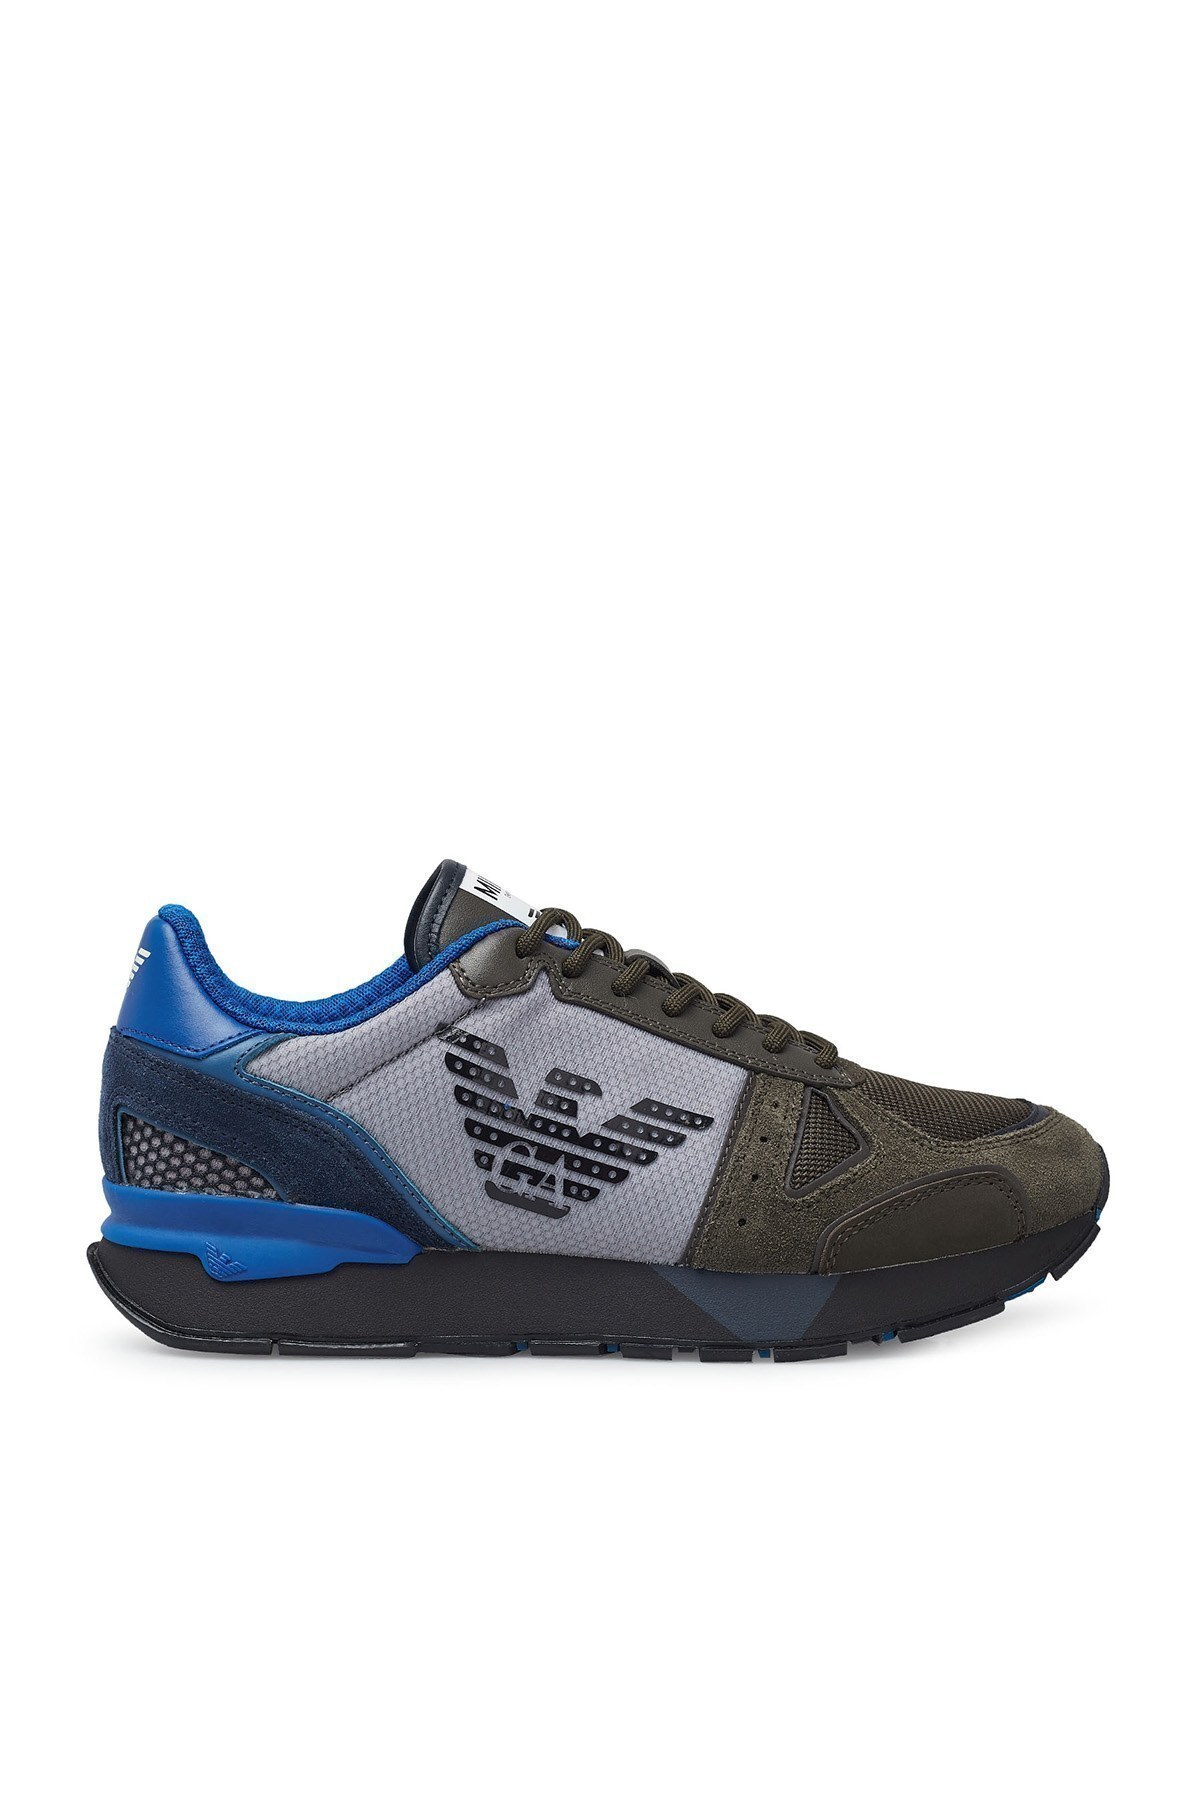 Emporio Armani Sneaker Erkek Ayakkabı X4X289 XM499 N017 KAHVE-MAVİ